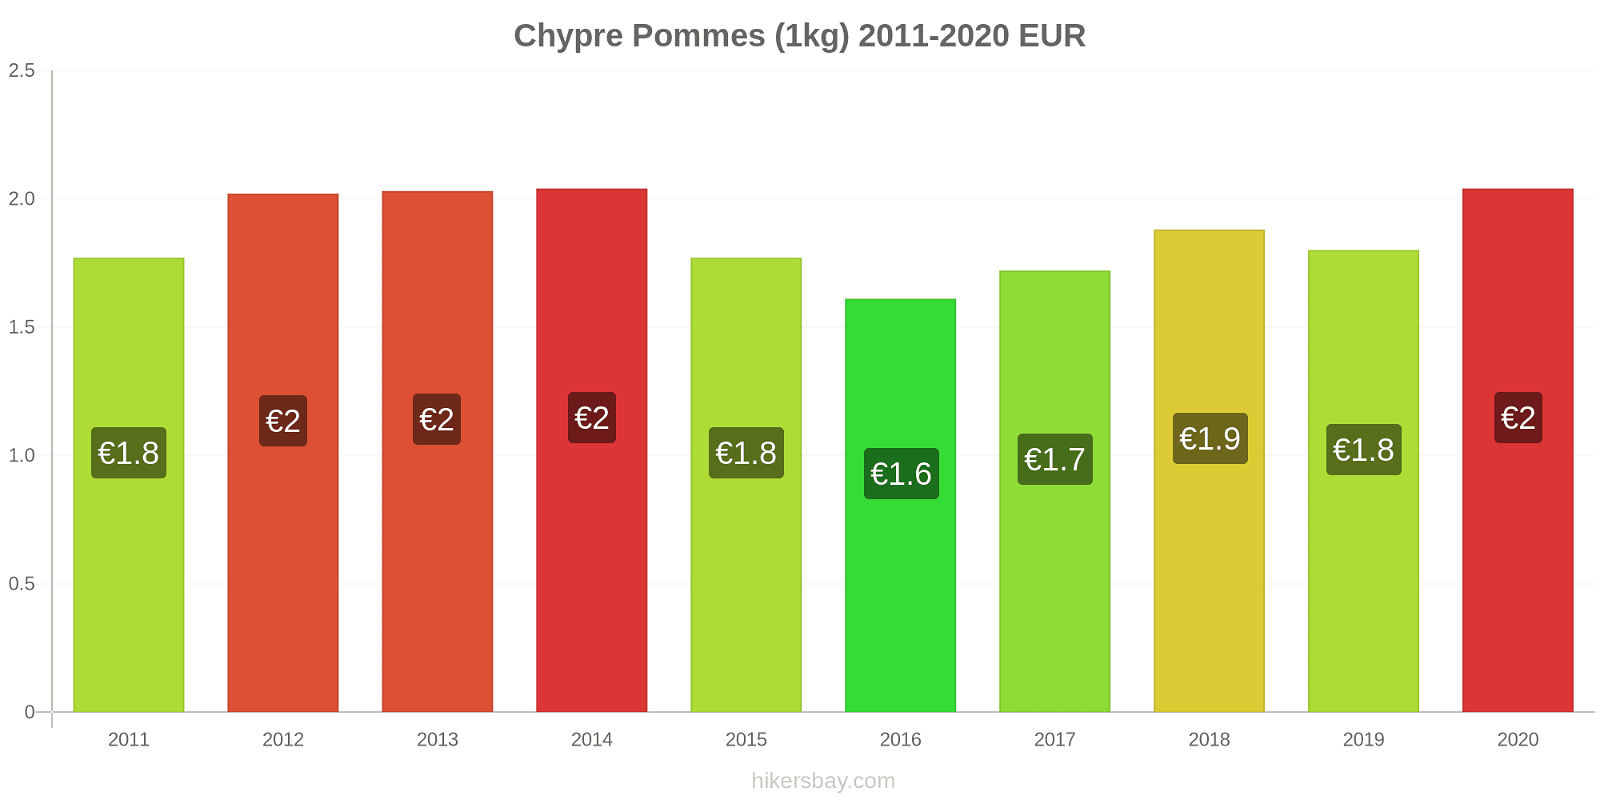 Chypre changements de prix Pommes (1kg) hikersbay.com